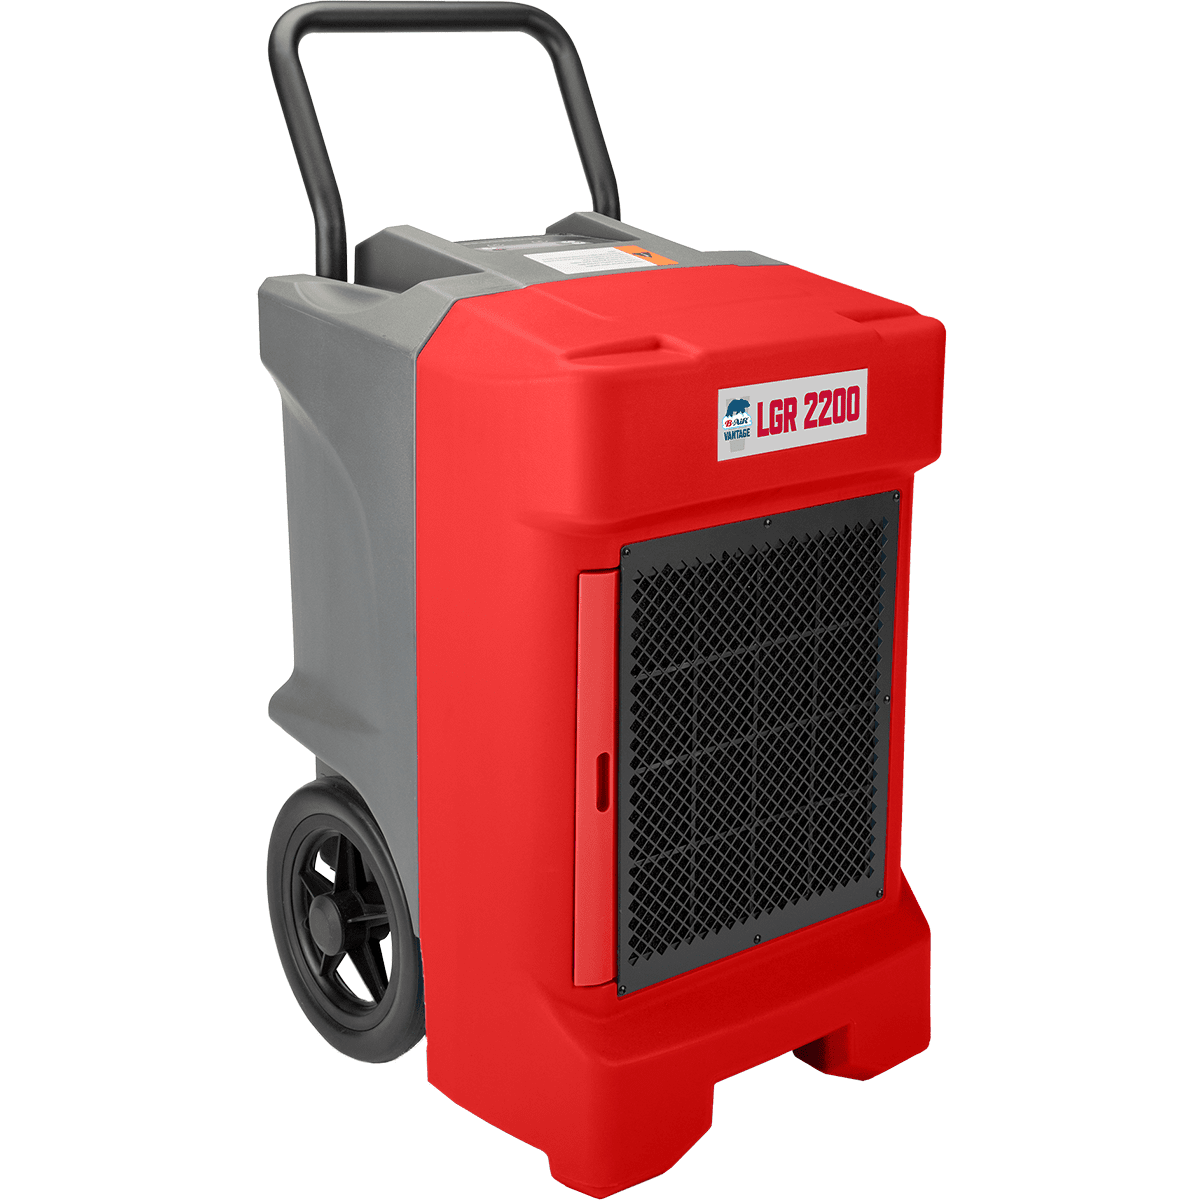 B-air Vantage Lrg 2200 Dehumidifier - Red